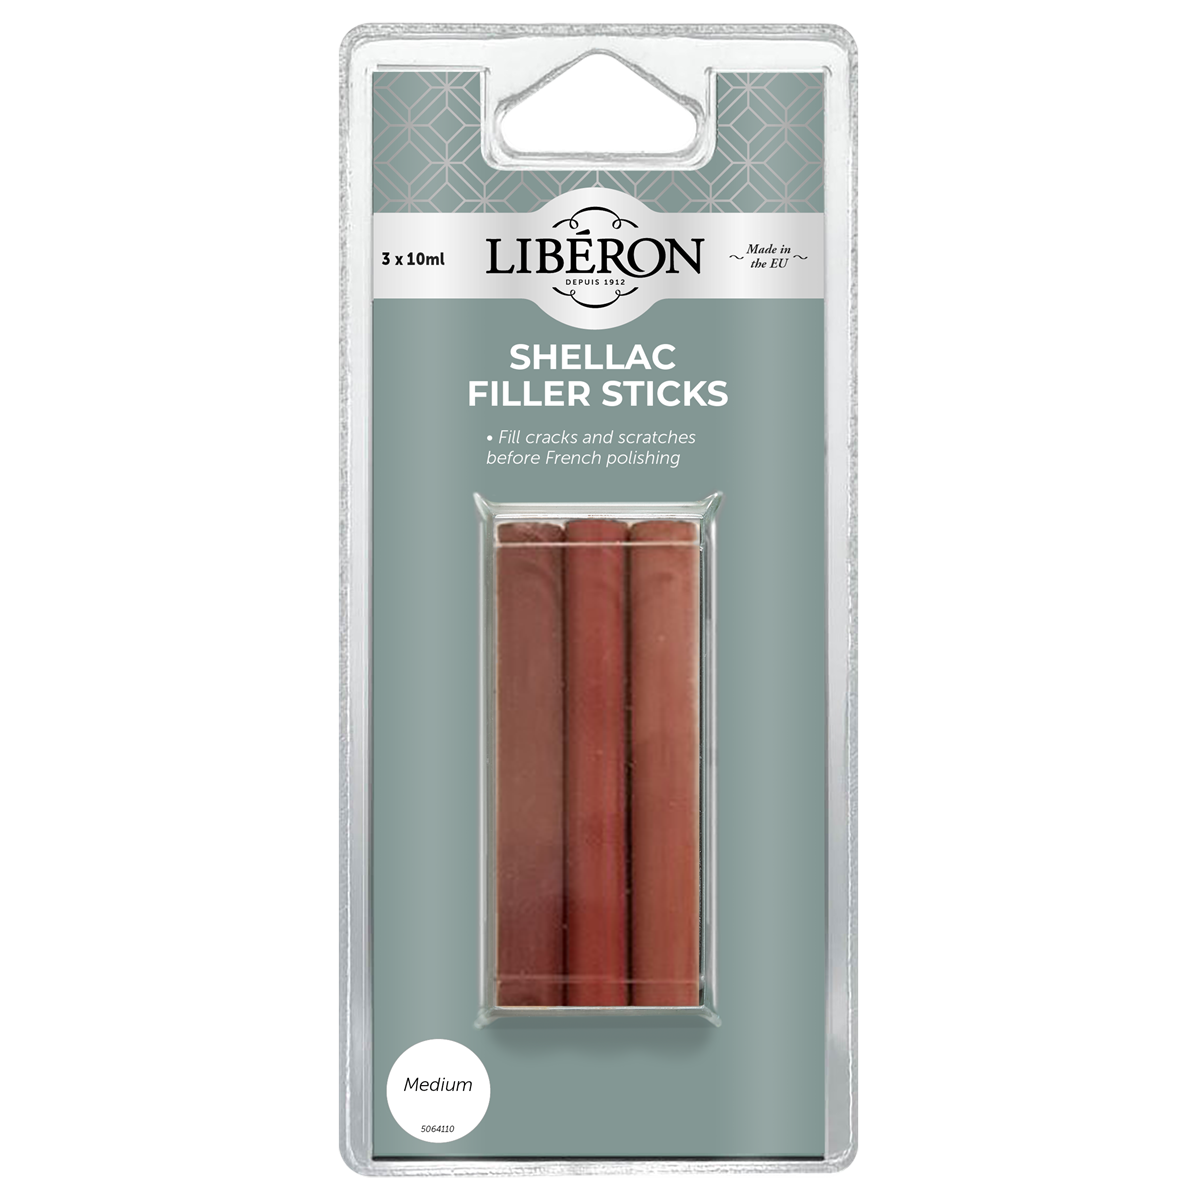 Liberon Shellac Filler Sticks Medium